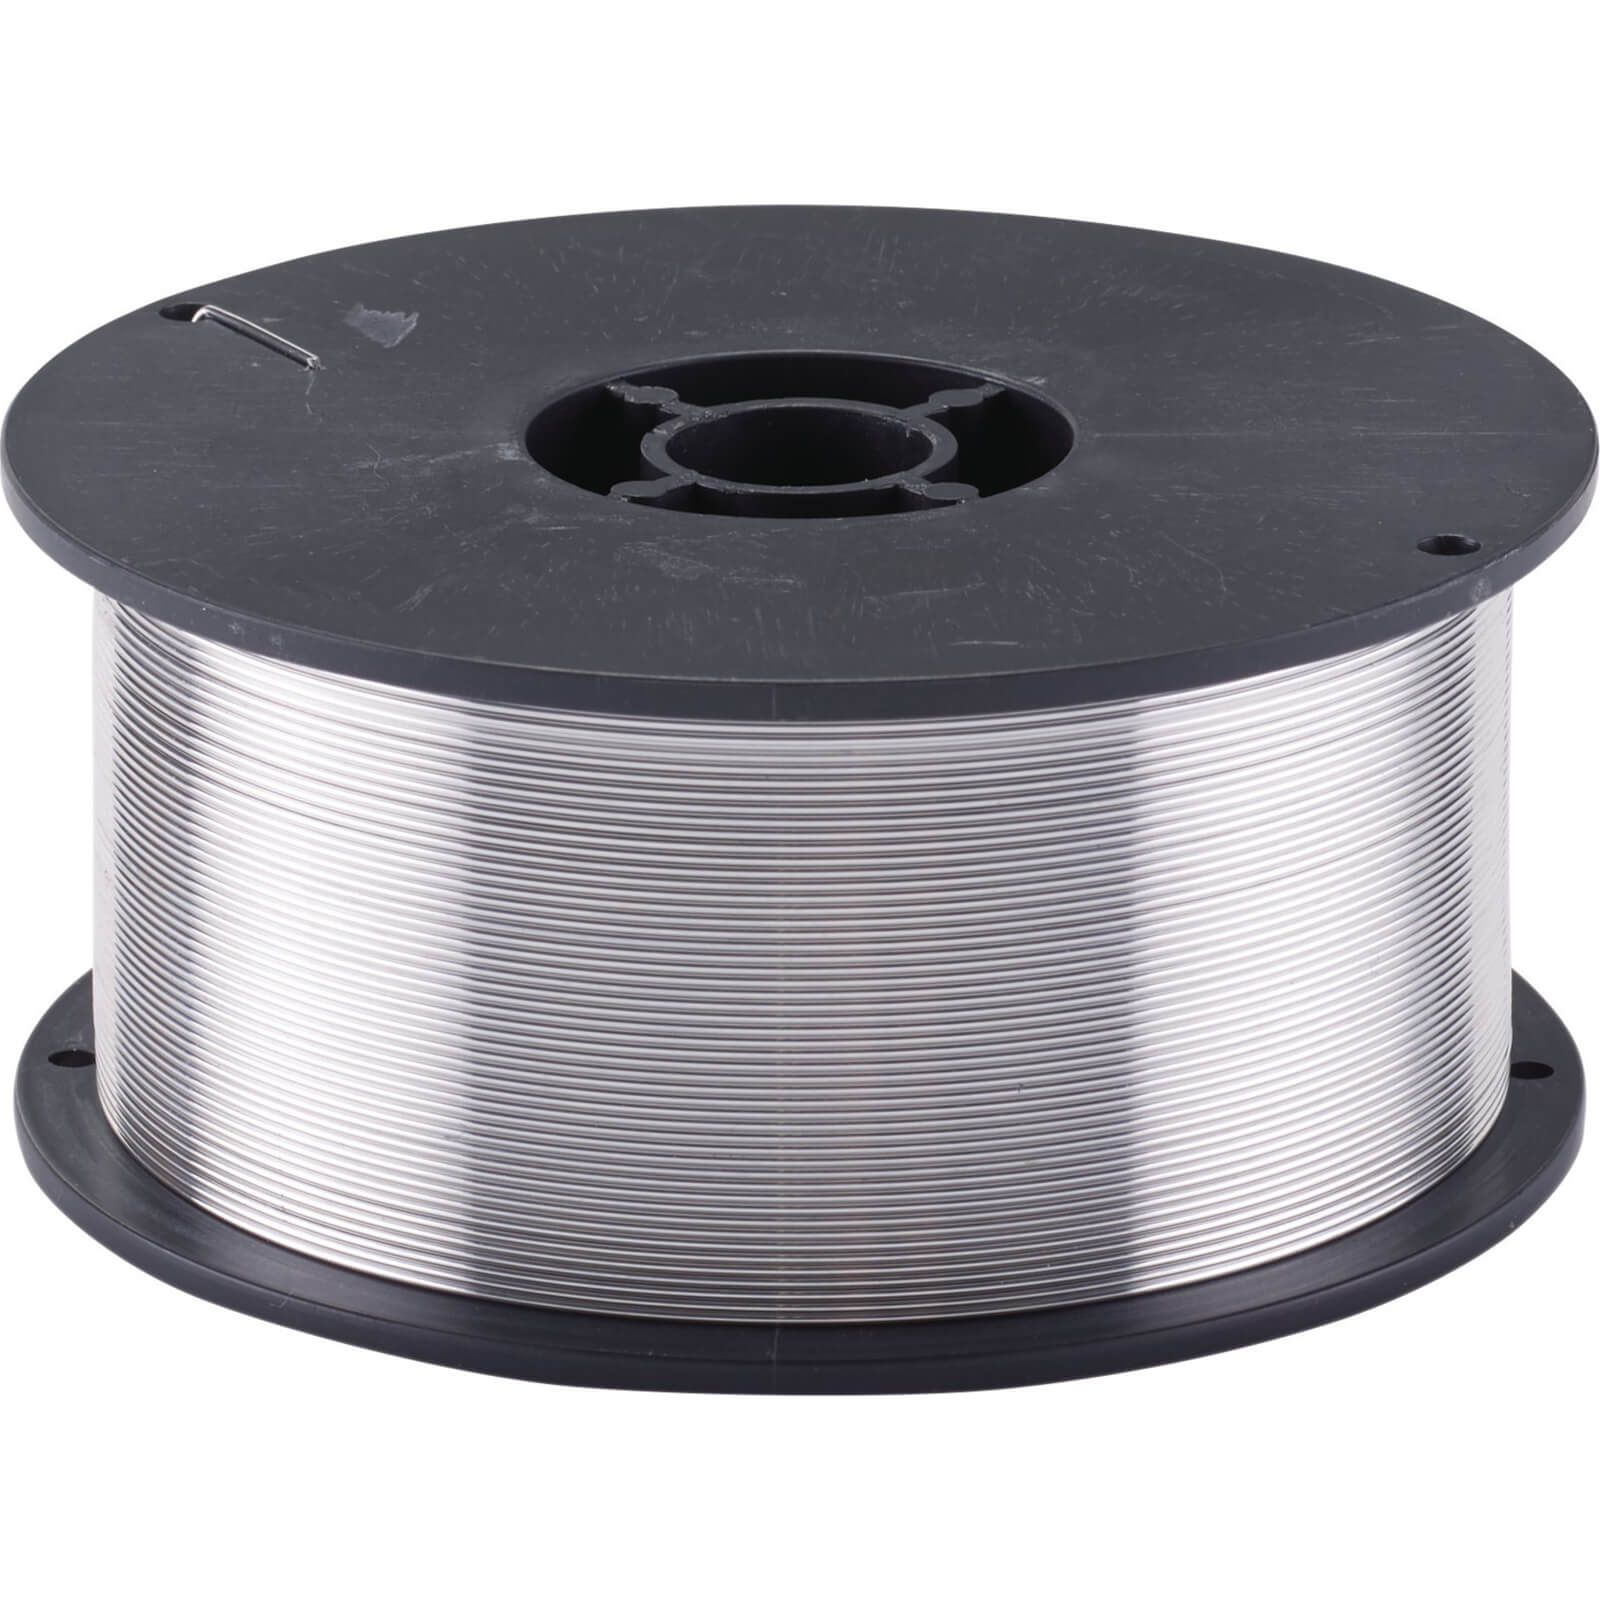 Image of Draper Aluminium 5356 Mig Welding Wire 0.8mm 500g